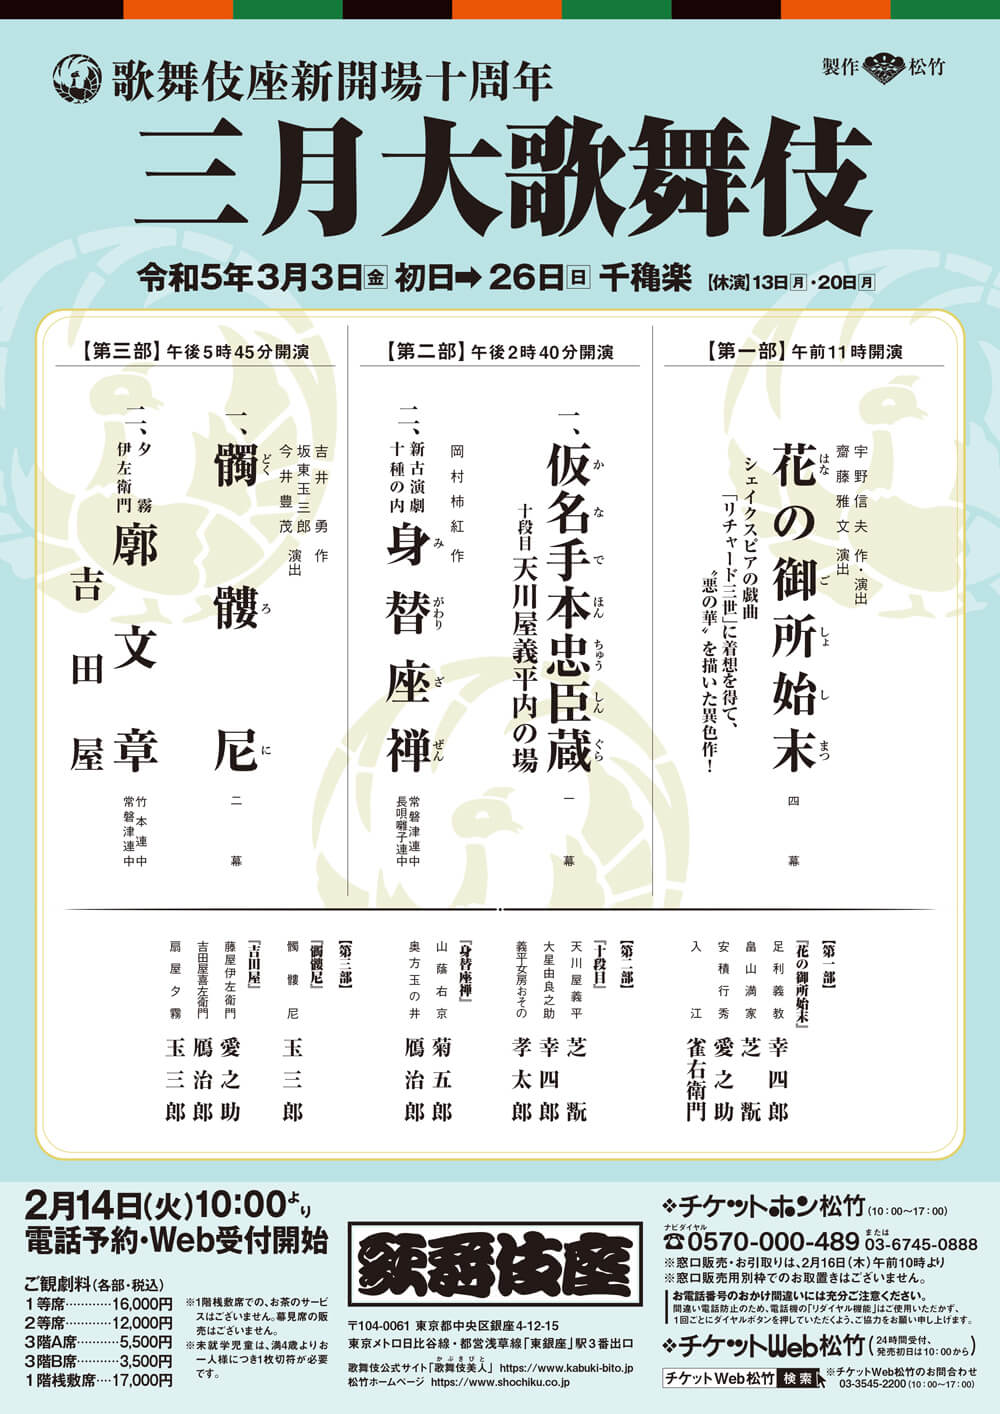 March Program at the kabukiza